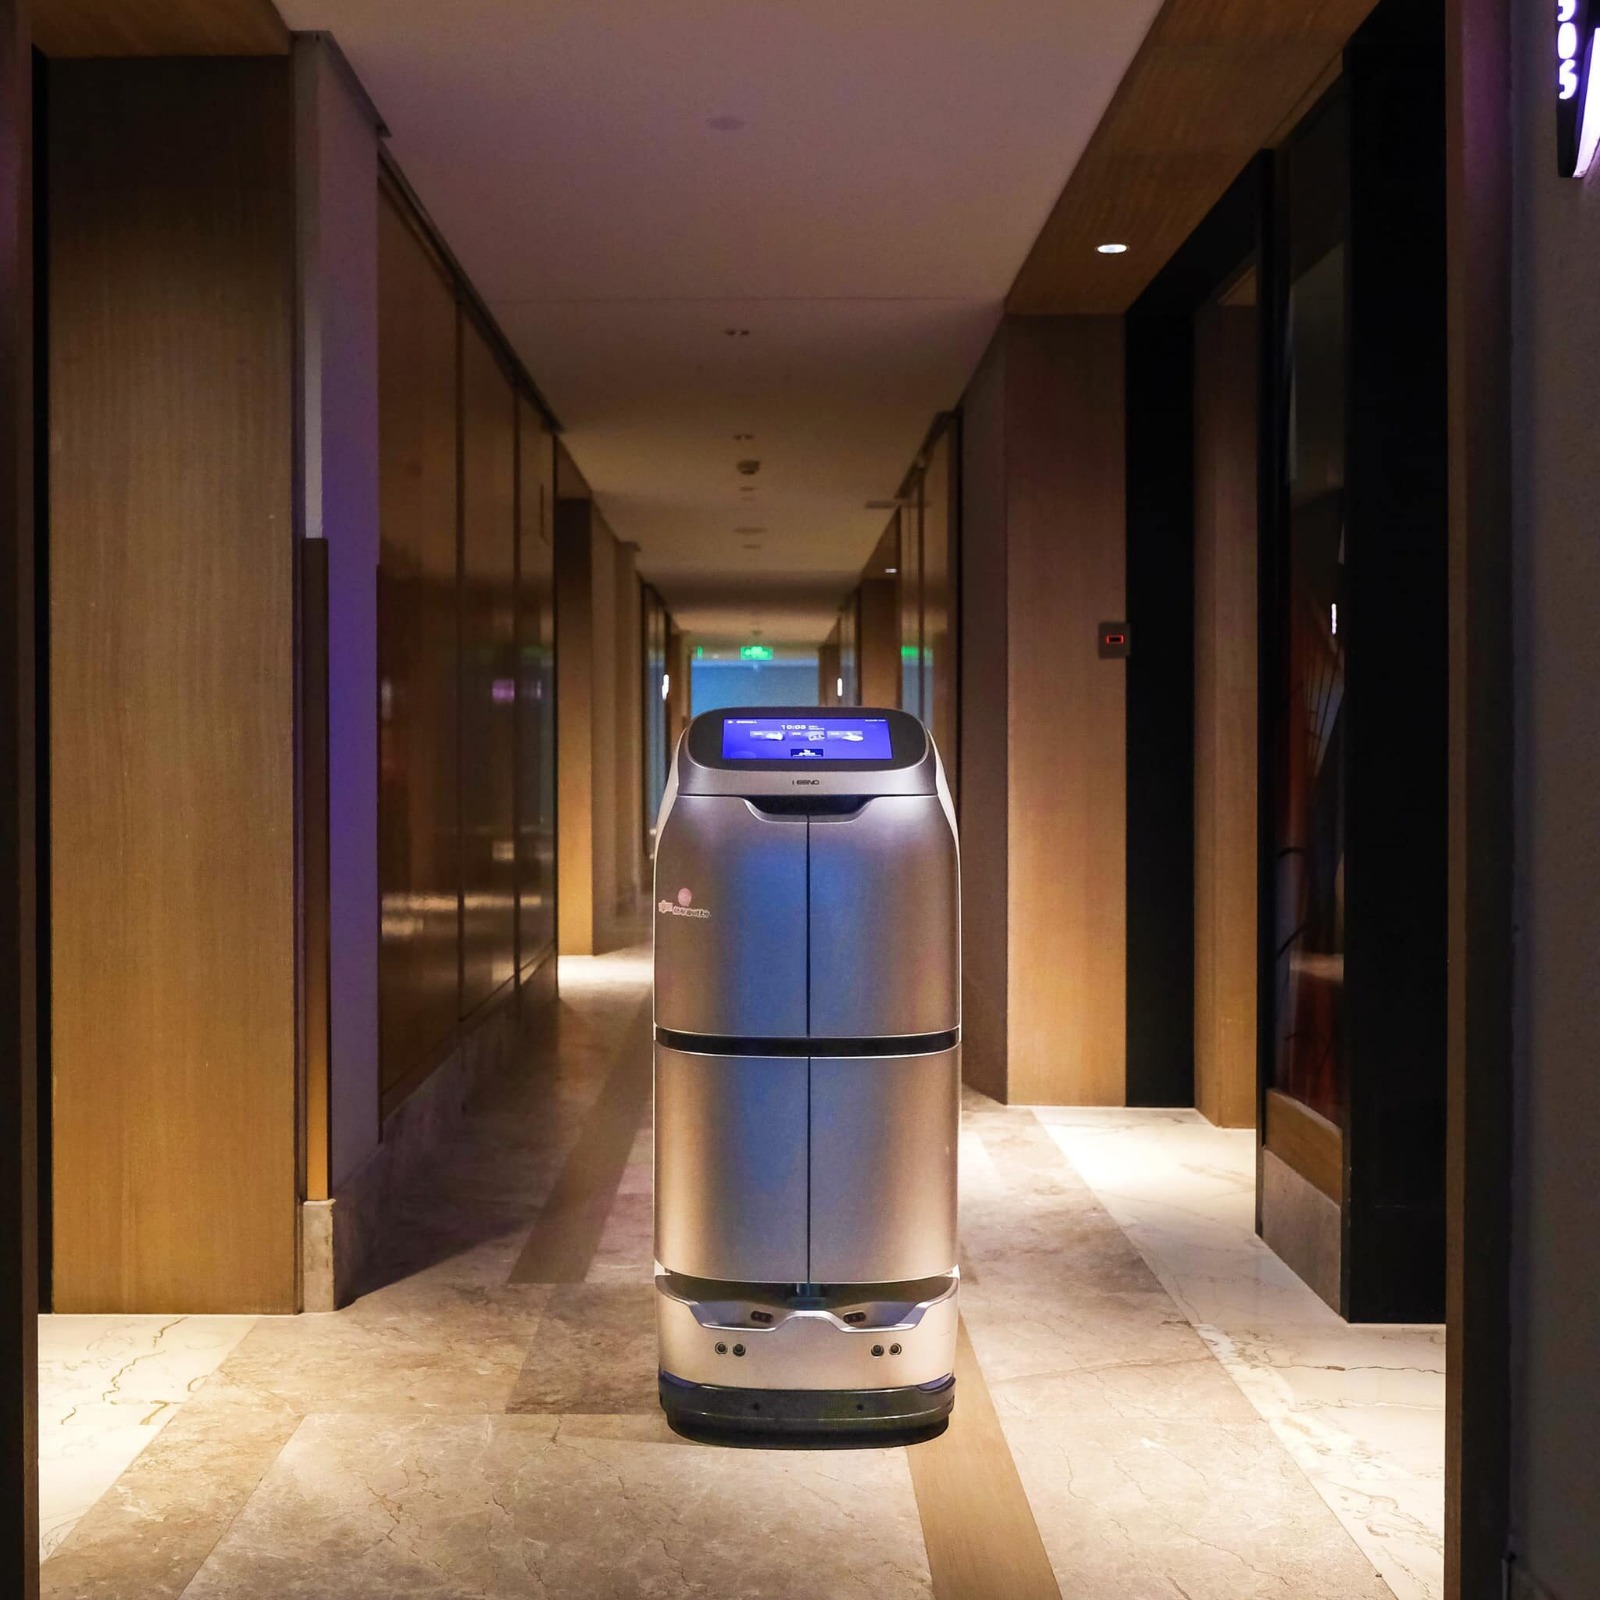 Os robôs conseguem se locomover de forma autonoma pelos hotéis e se conectam aos elevadores por meio de WI-FI